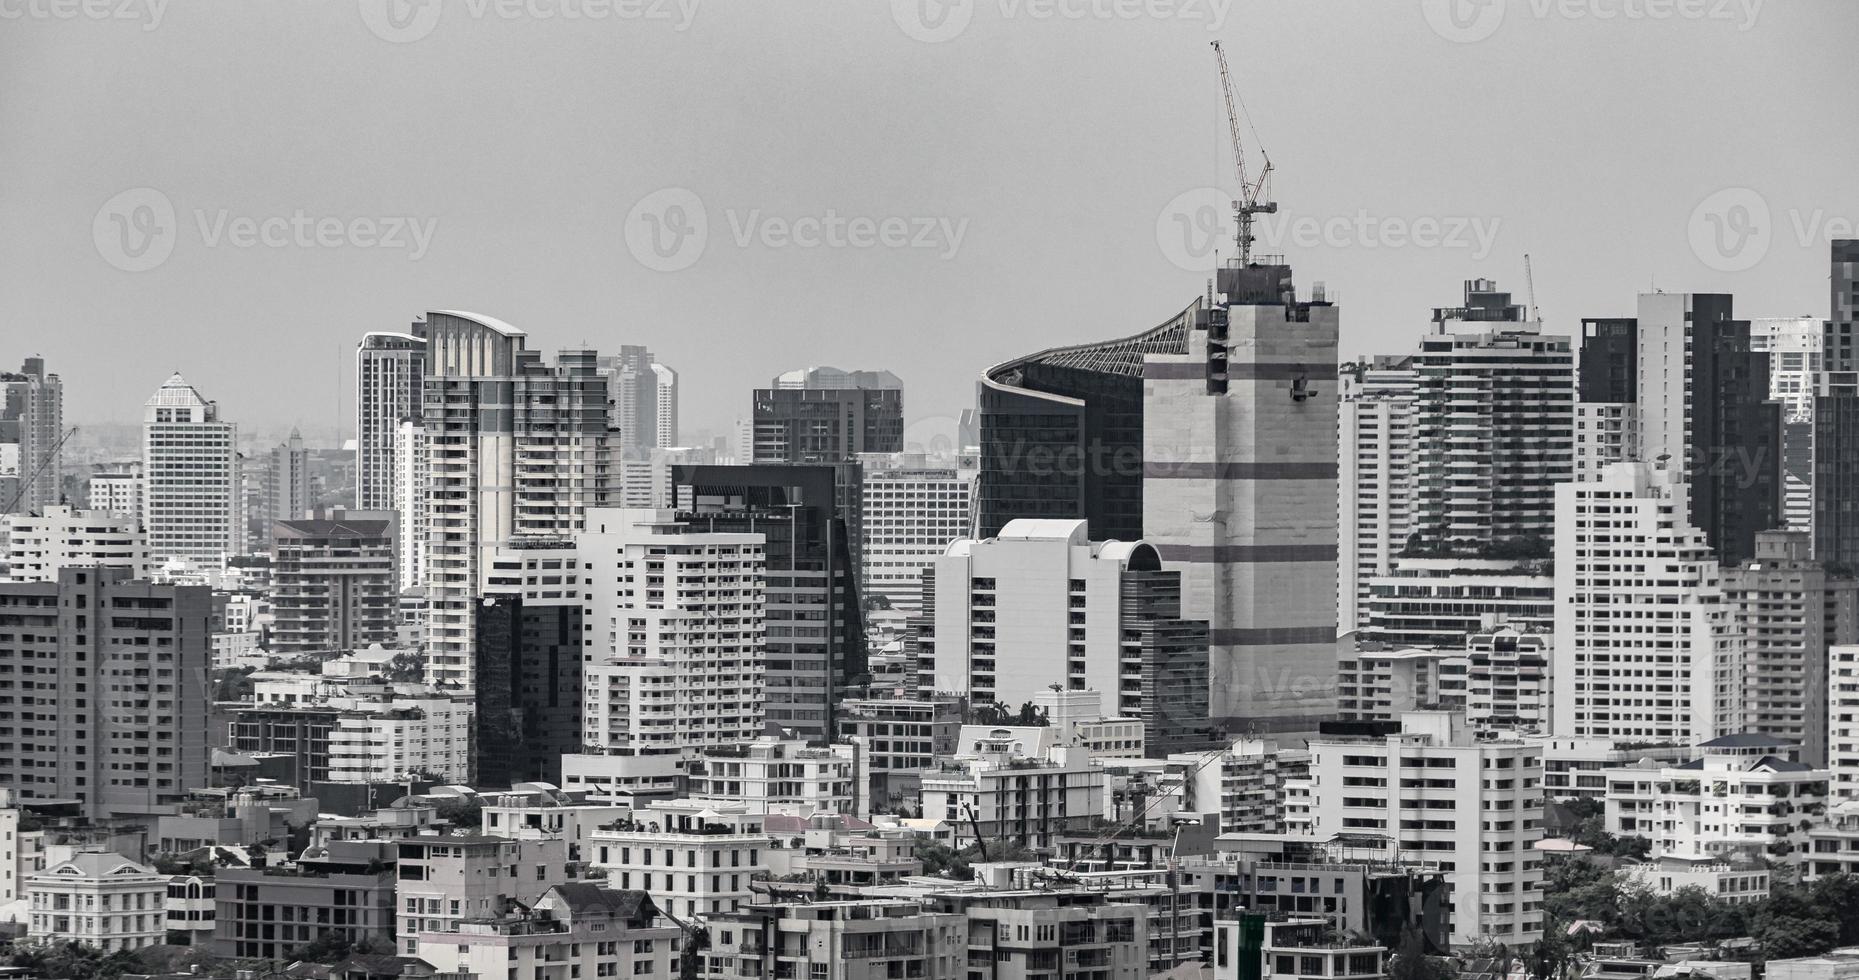 Banguecoque Tailândia cidade panorama arranha-céu paisagem urbana imagens em preto e branco. foto